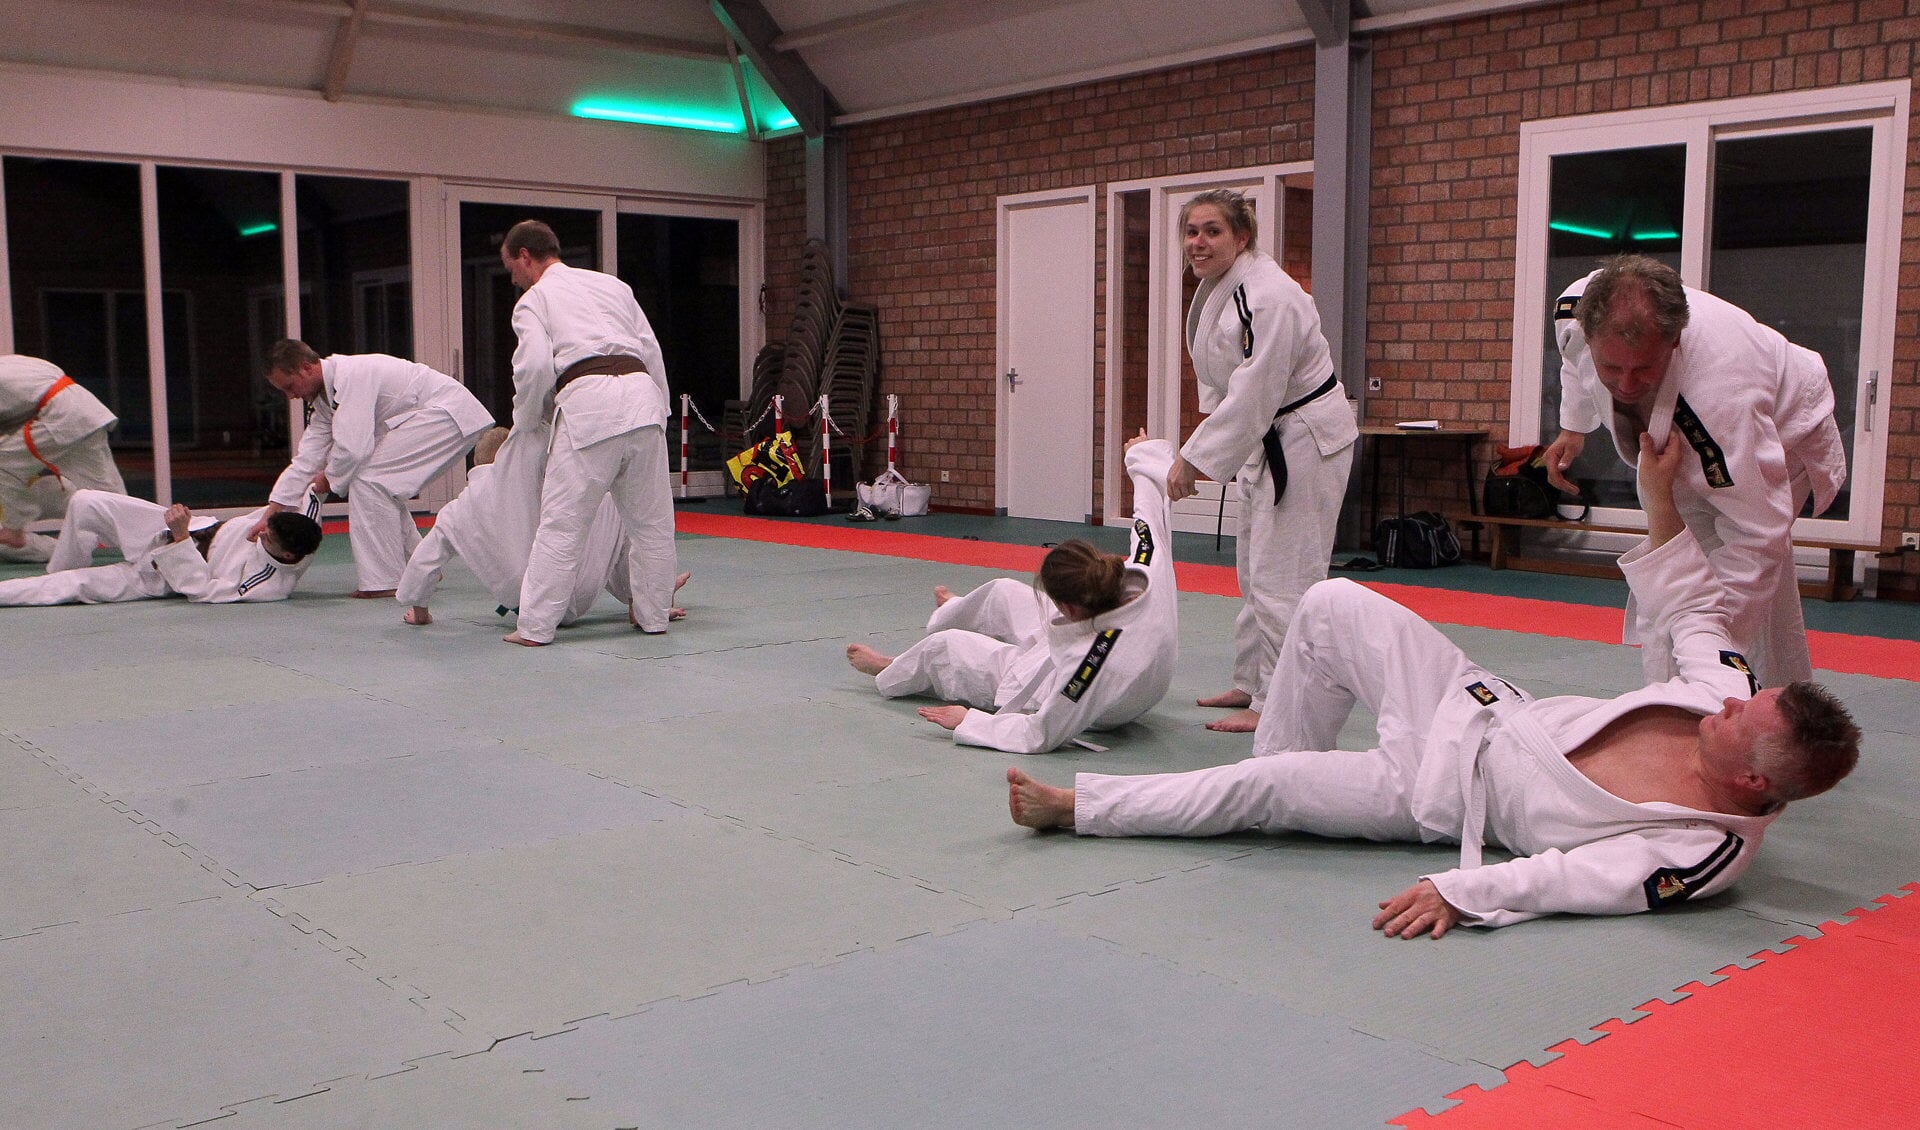 Judoka's bij Judovereniging Kaihatsu Oss. (Foto: Hans van der Poel)